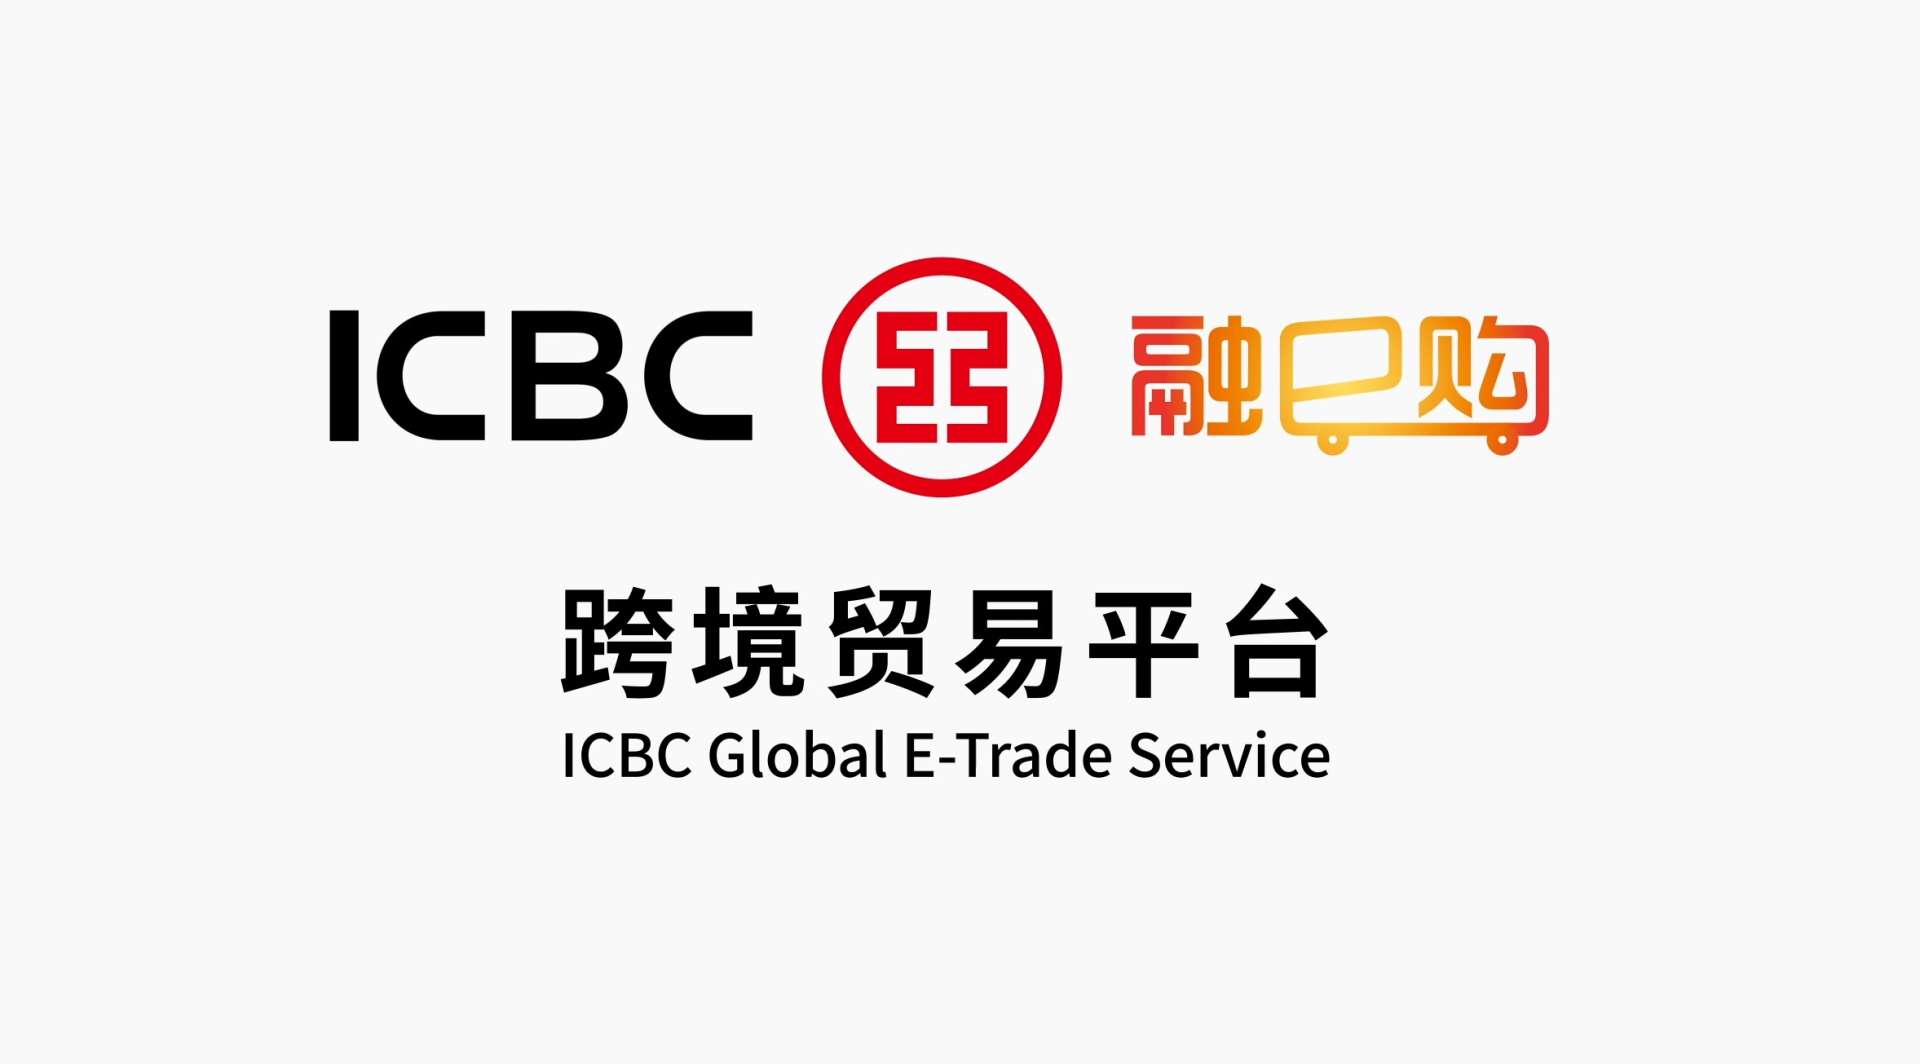 中国工商银行 融e购 跨境贸易平台宣传